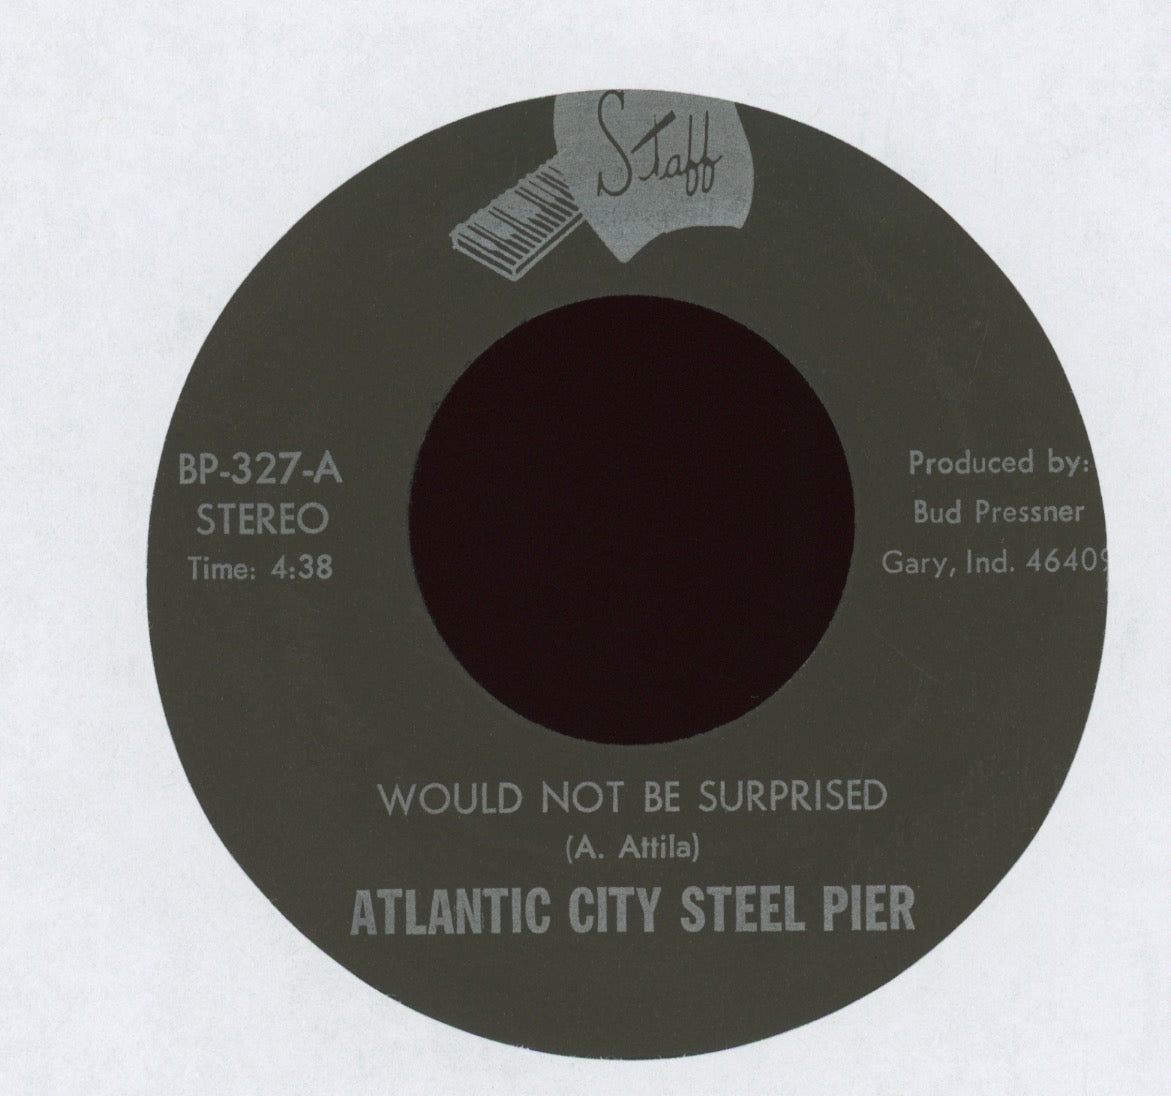 Atlantic City Steel Pier - All Night Long on Staff Funk Rock 45 Breaks